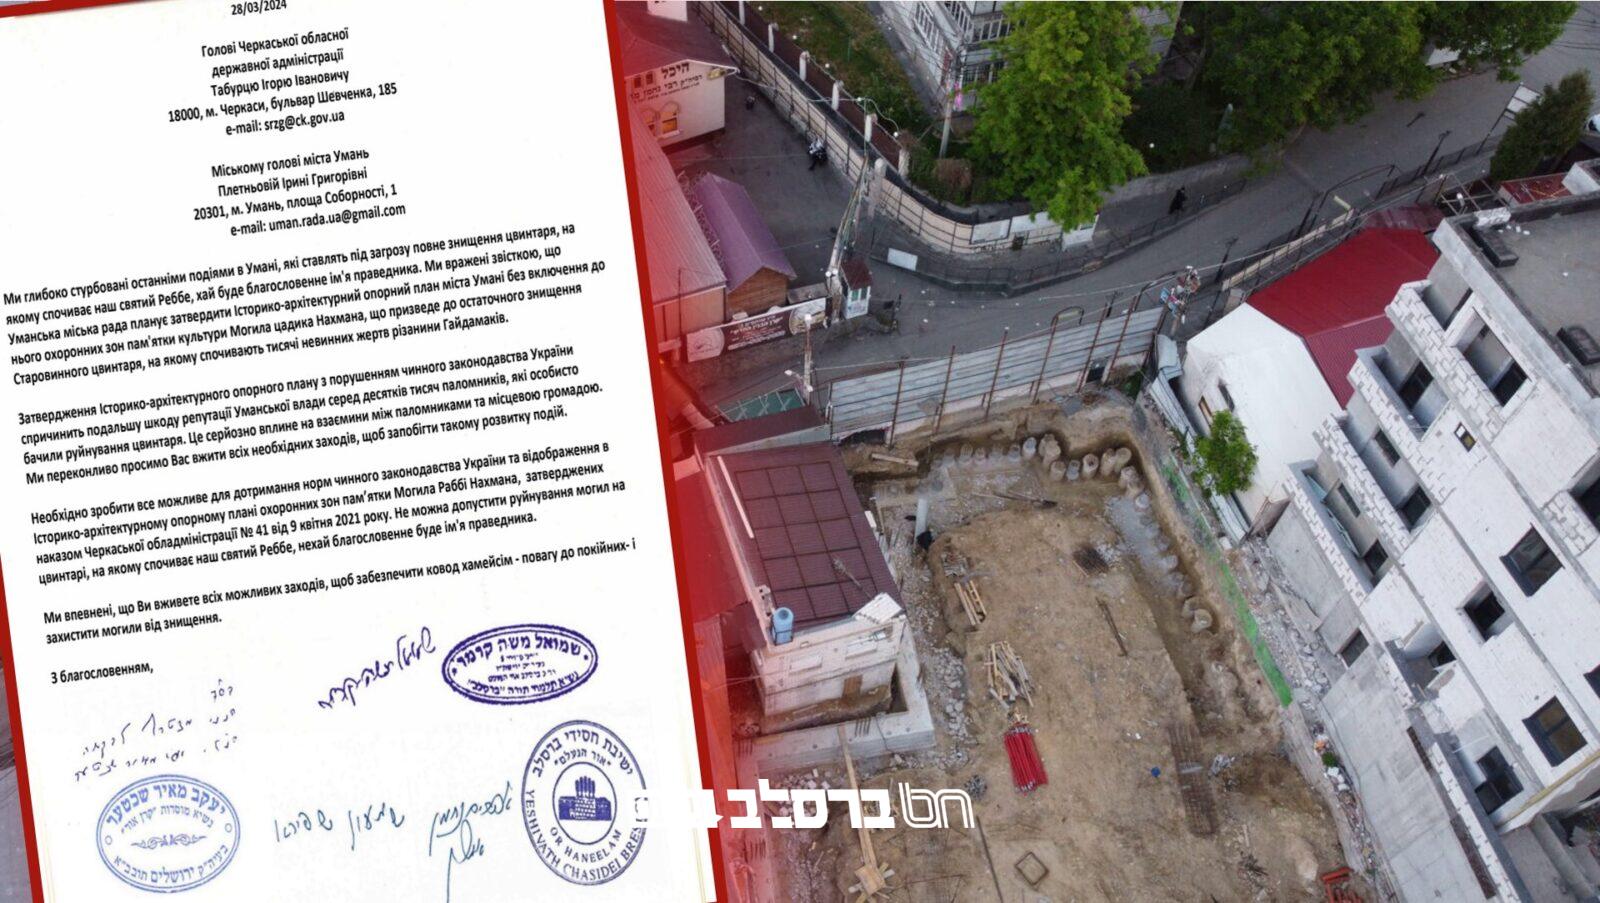 שערורייה חסרת תקדים • עיריית אומן: "אהל רבי נחמן אינו בבית קברות יהודי"